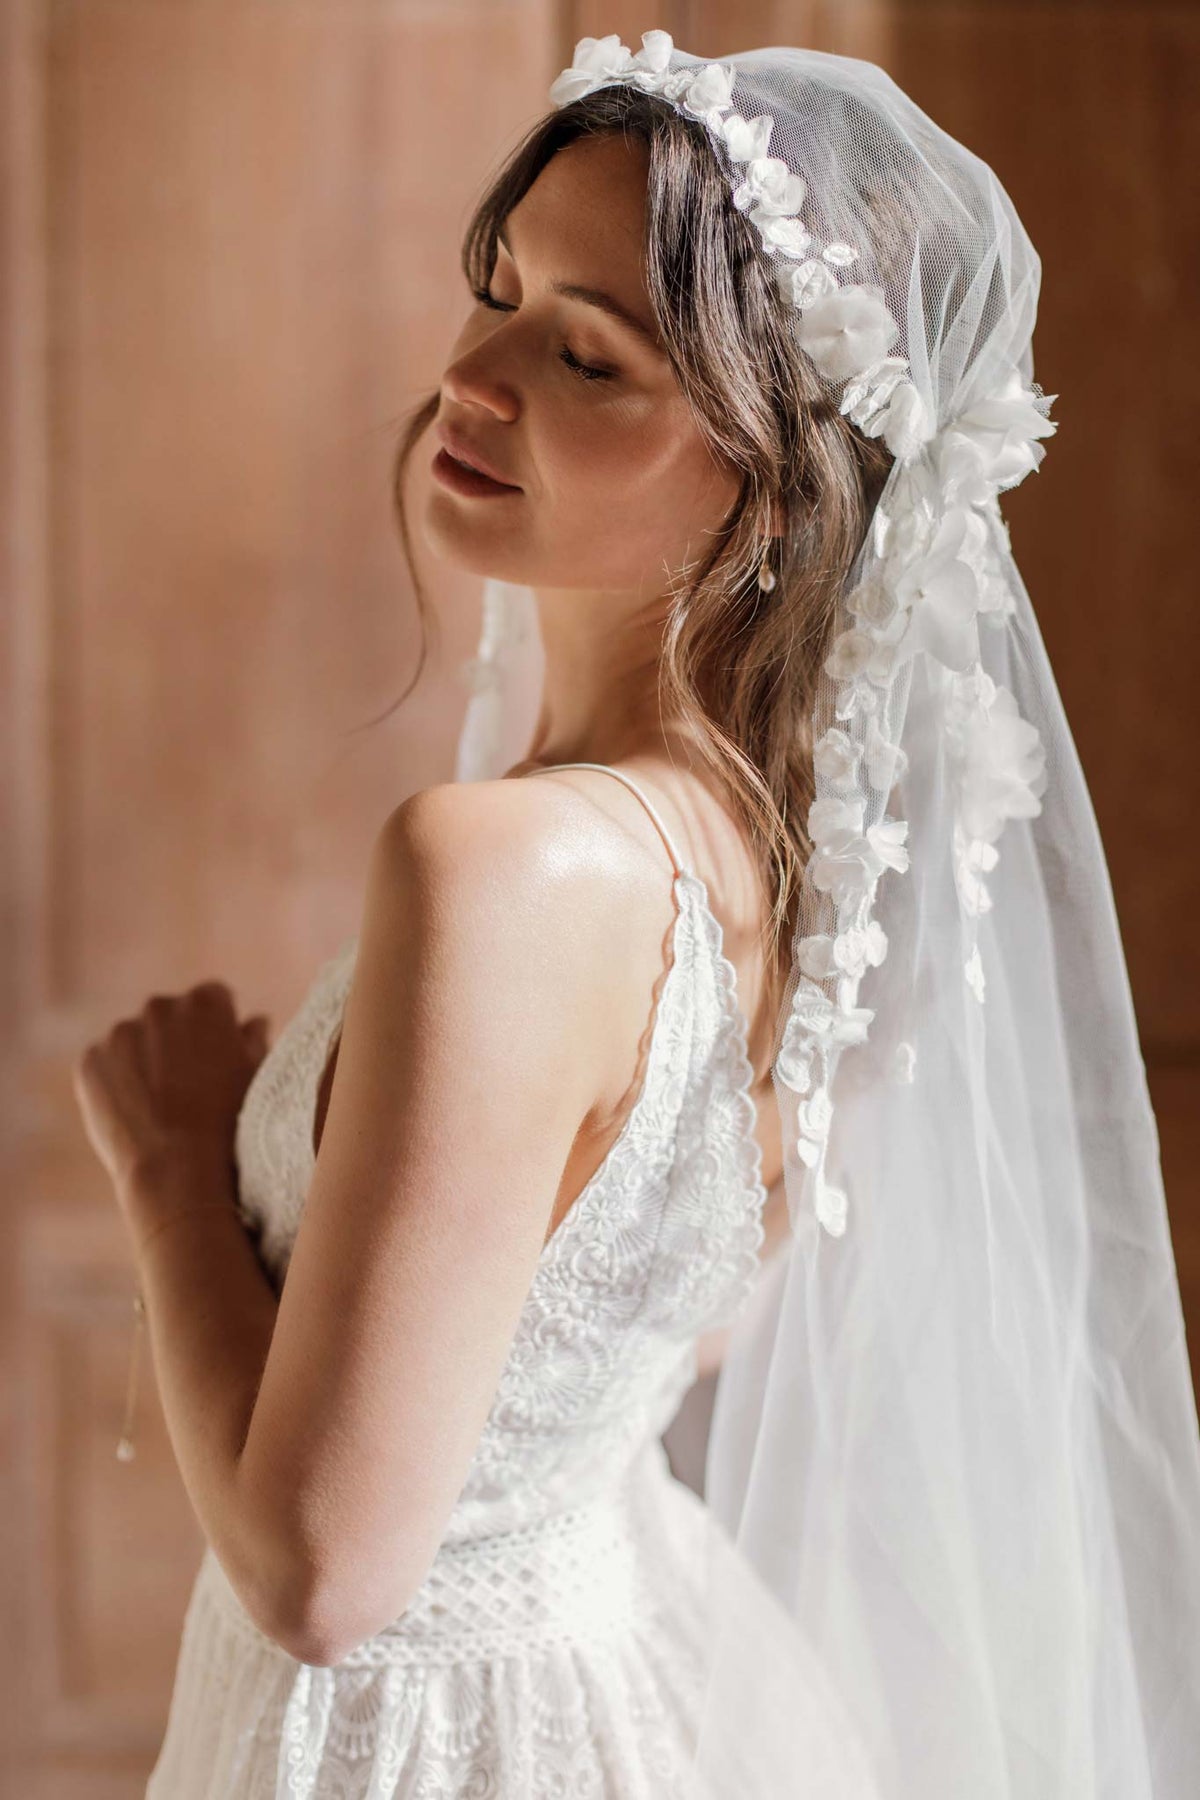 Floral juliet cap wedding veil